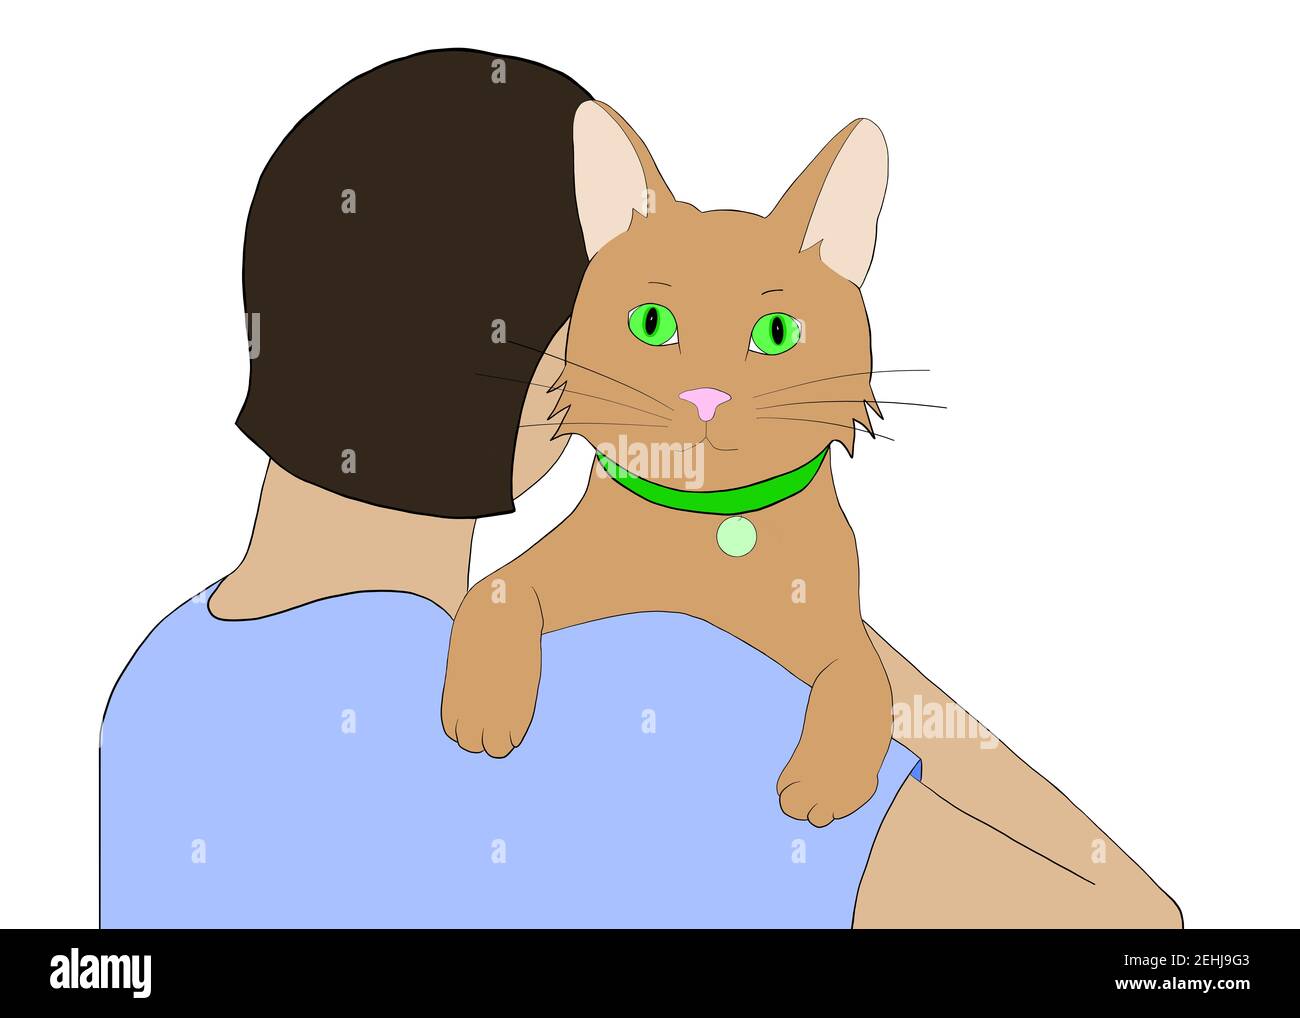 Ilustración dibujo dibujado a mano de un gato marrón en los brazos de una  persona de cabello oscuro frente al espectador. Gato, con collar con  etiqueta de identificación, mirando o Fotografía de